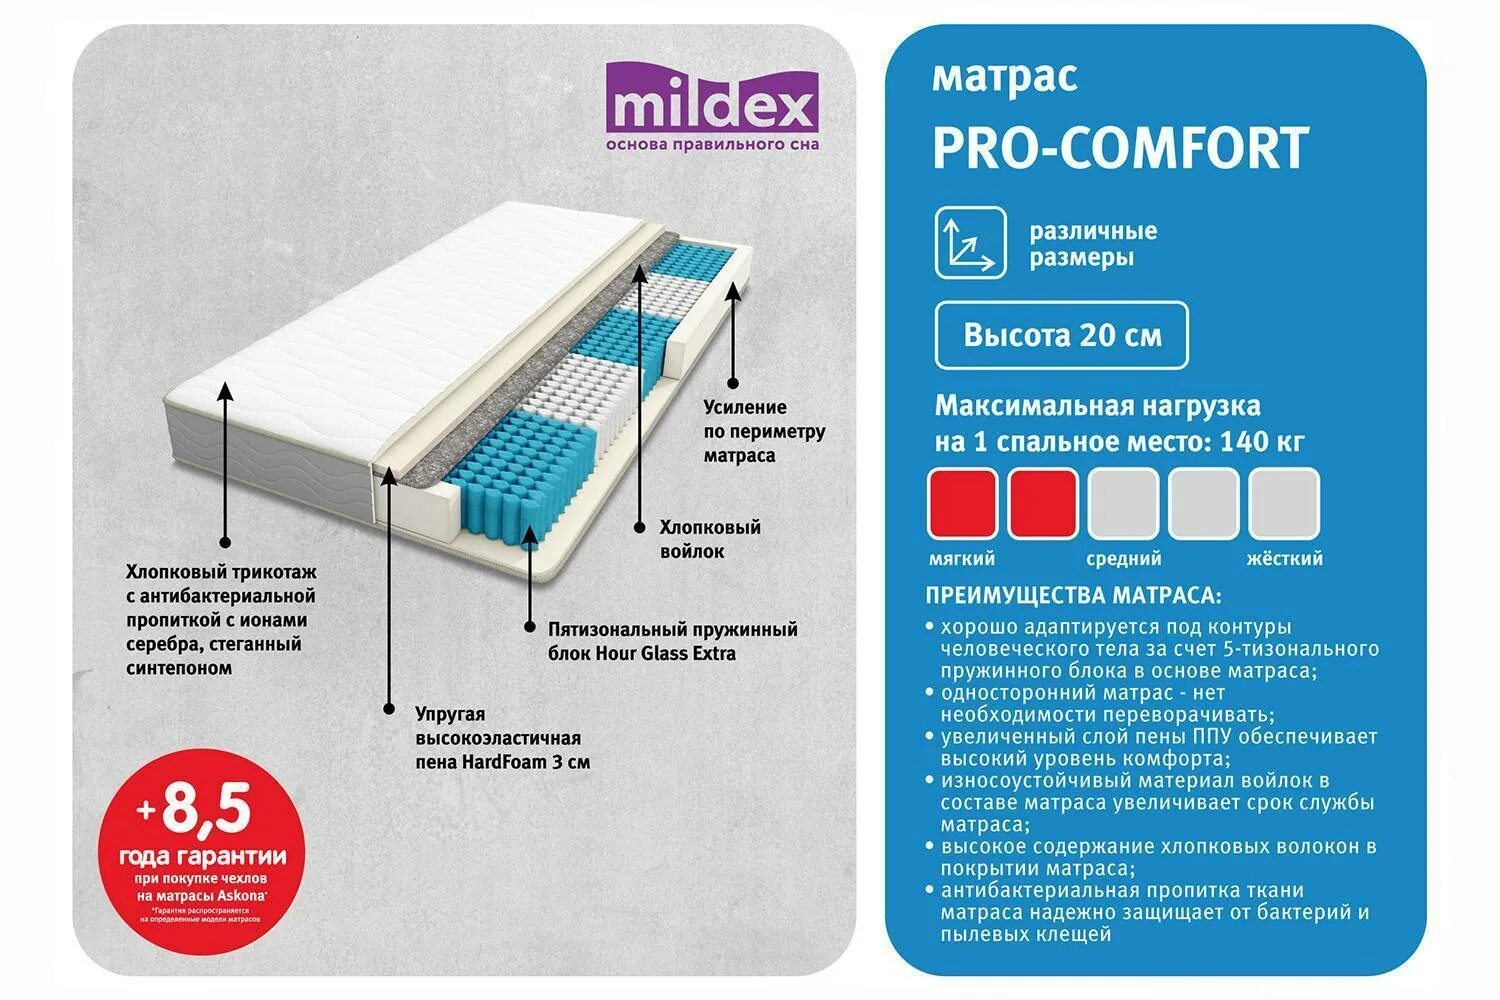 Как правильно подобрать матрас. Матрас Mildex Pro-Comfort. Матрас пружинный Mildex Pro Comfort. Матрас Mildex Pro-Comfort, 140х200 см. Шкала жесткости матрасов.